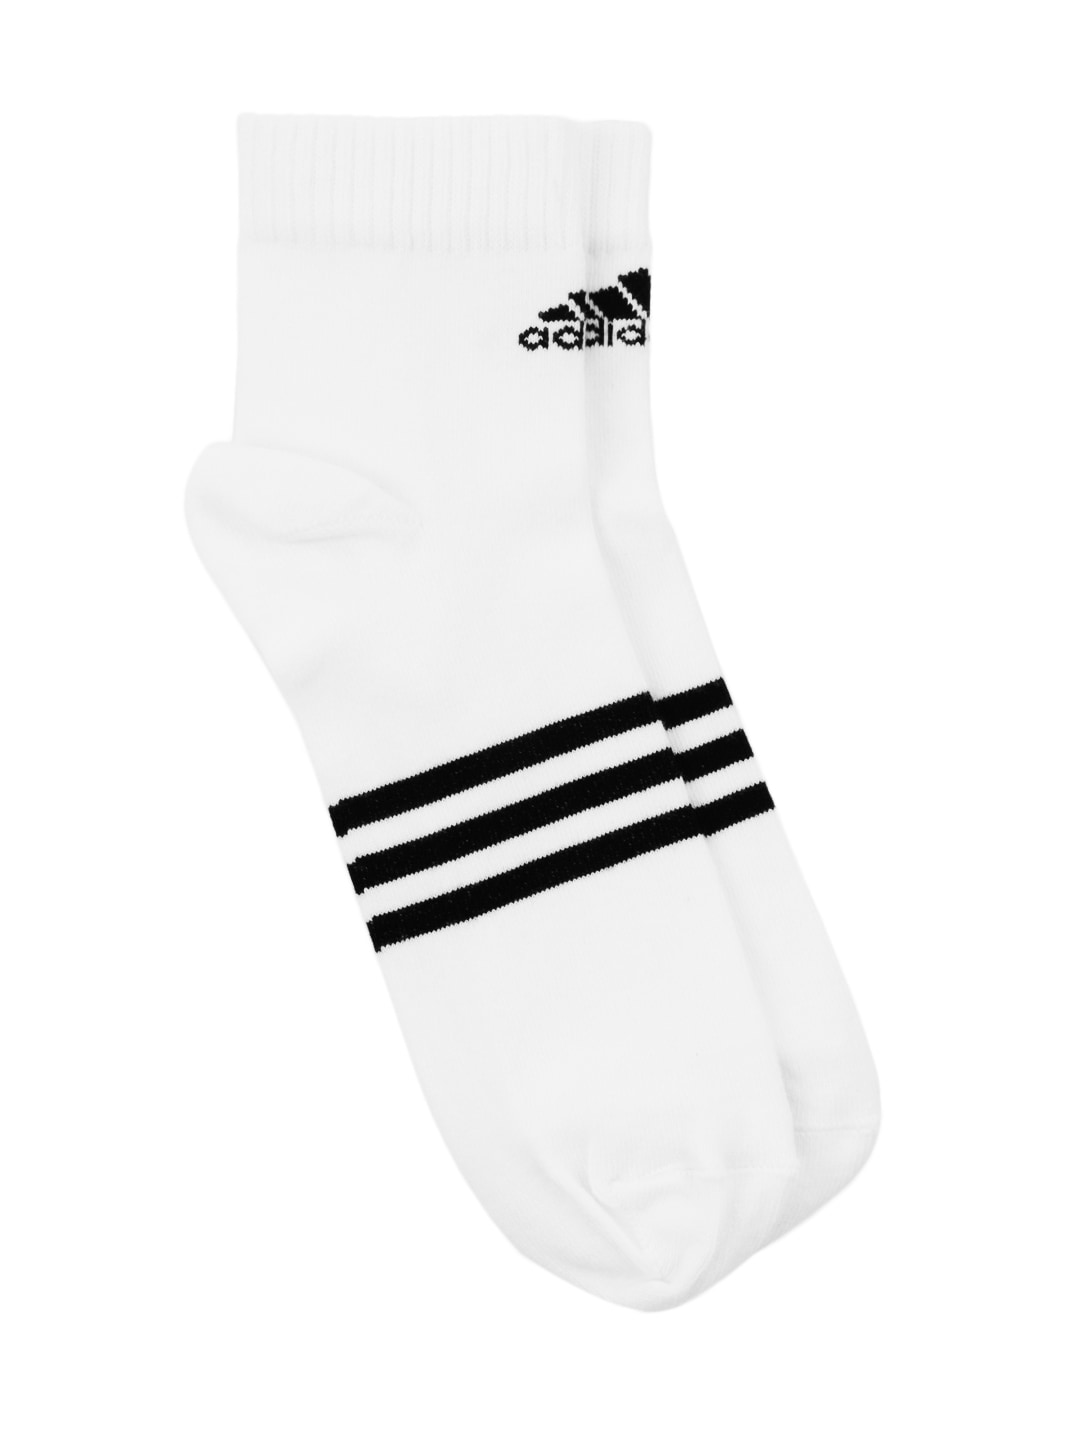 ADIDAS Unisex White Socks